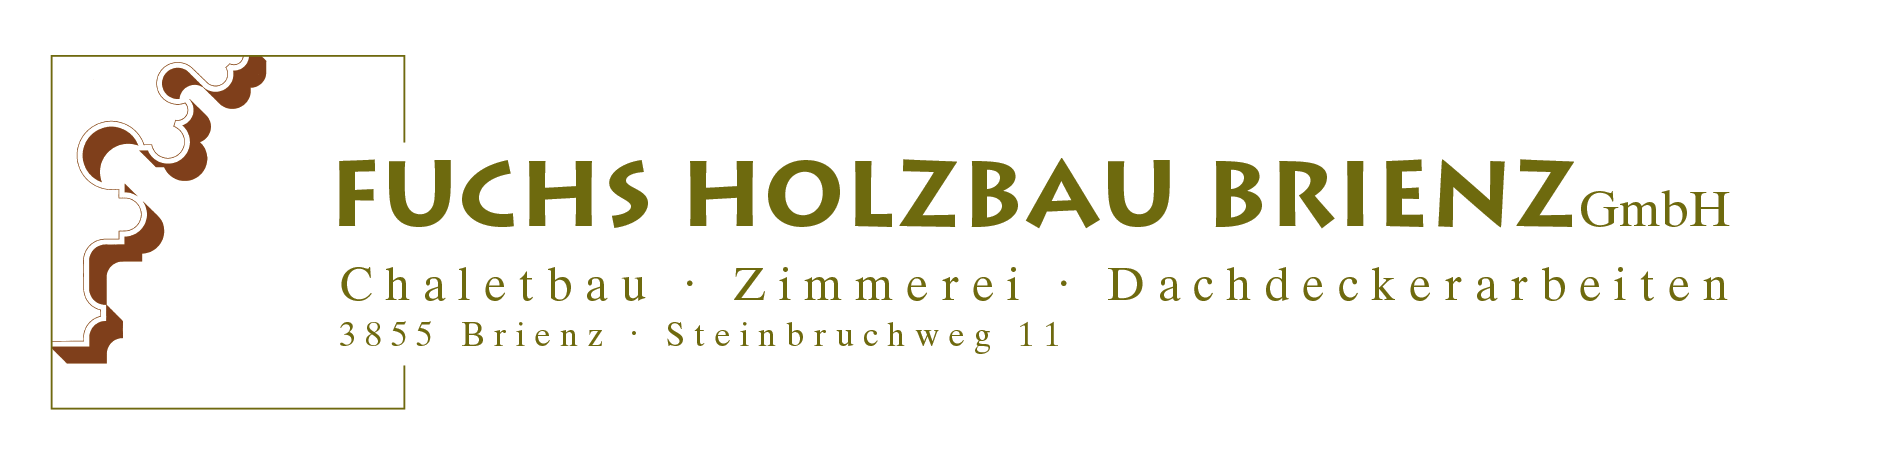 Fuchs Holzbau Brienz